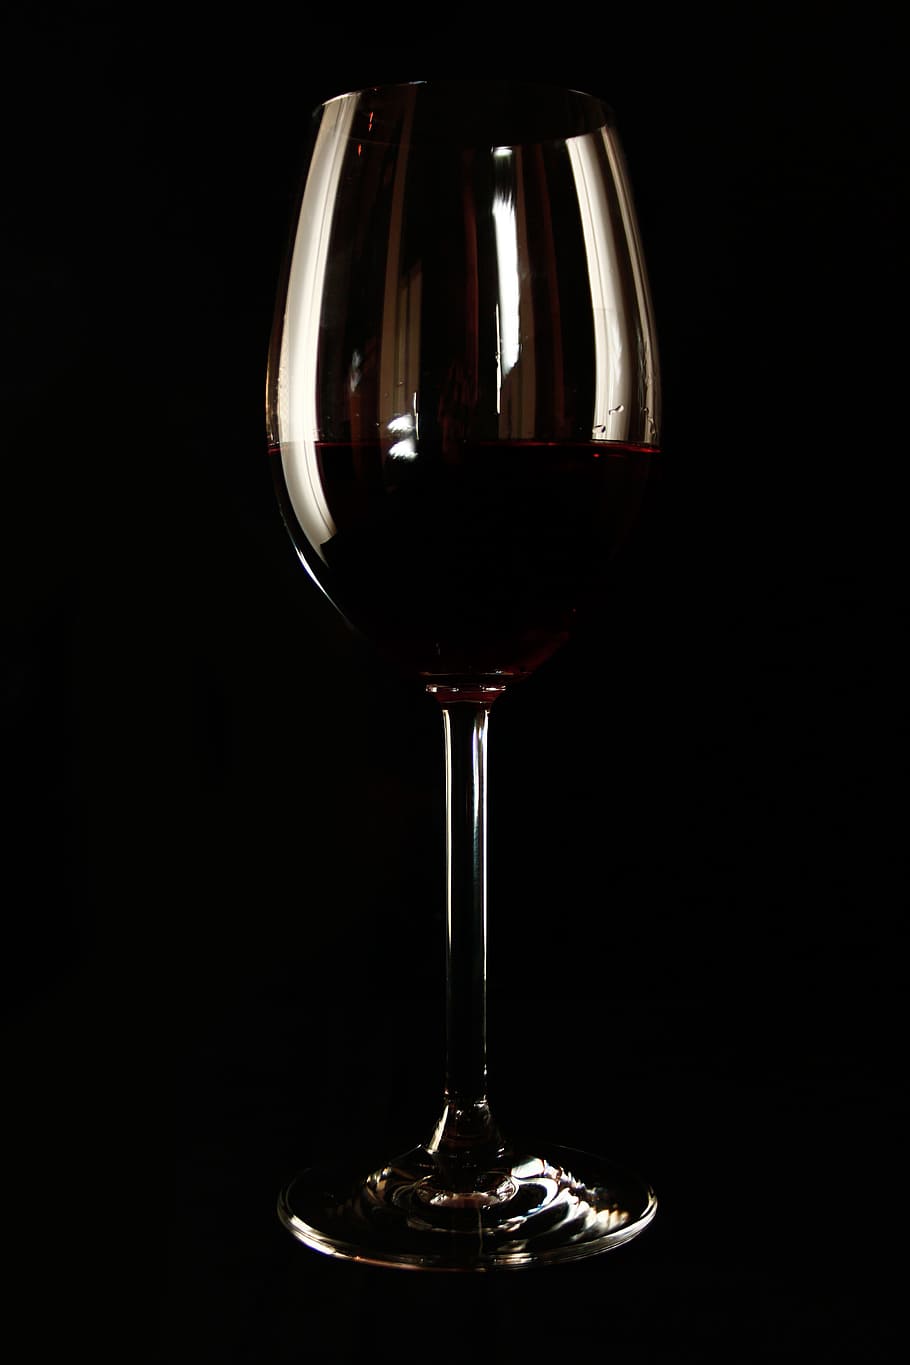 Vino, HDR, vid, viñedo, bebida, unido, copa de vino, alcohol, vidrio para beber, color negro